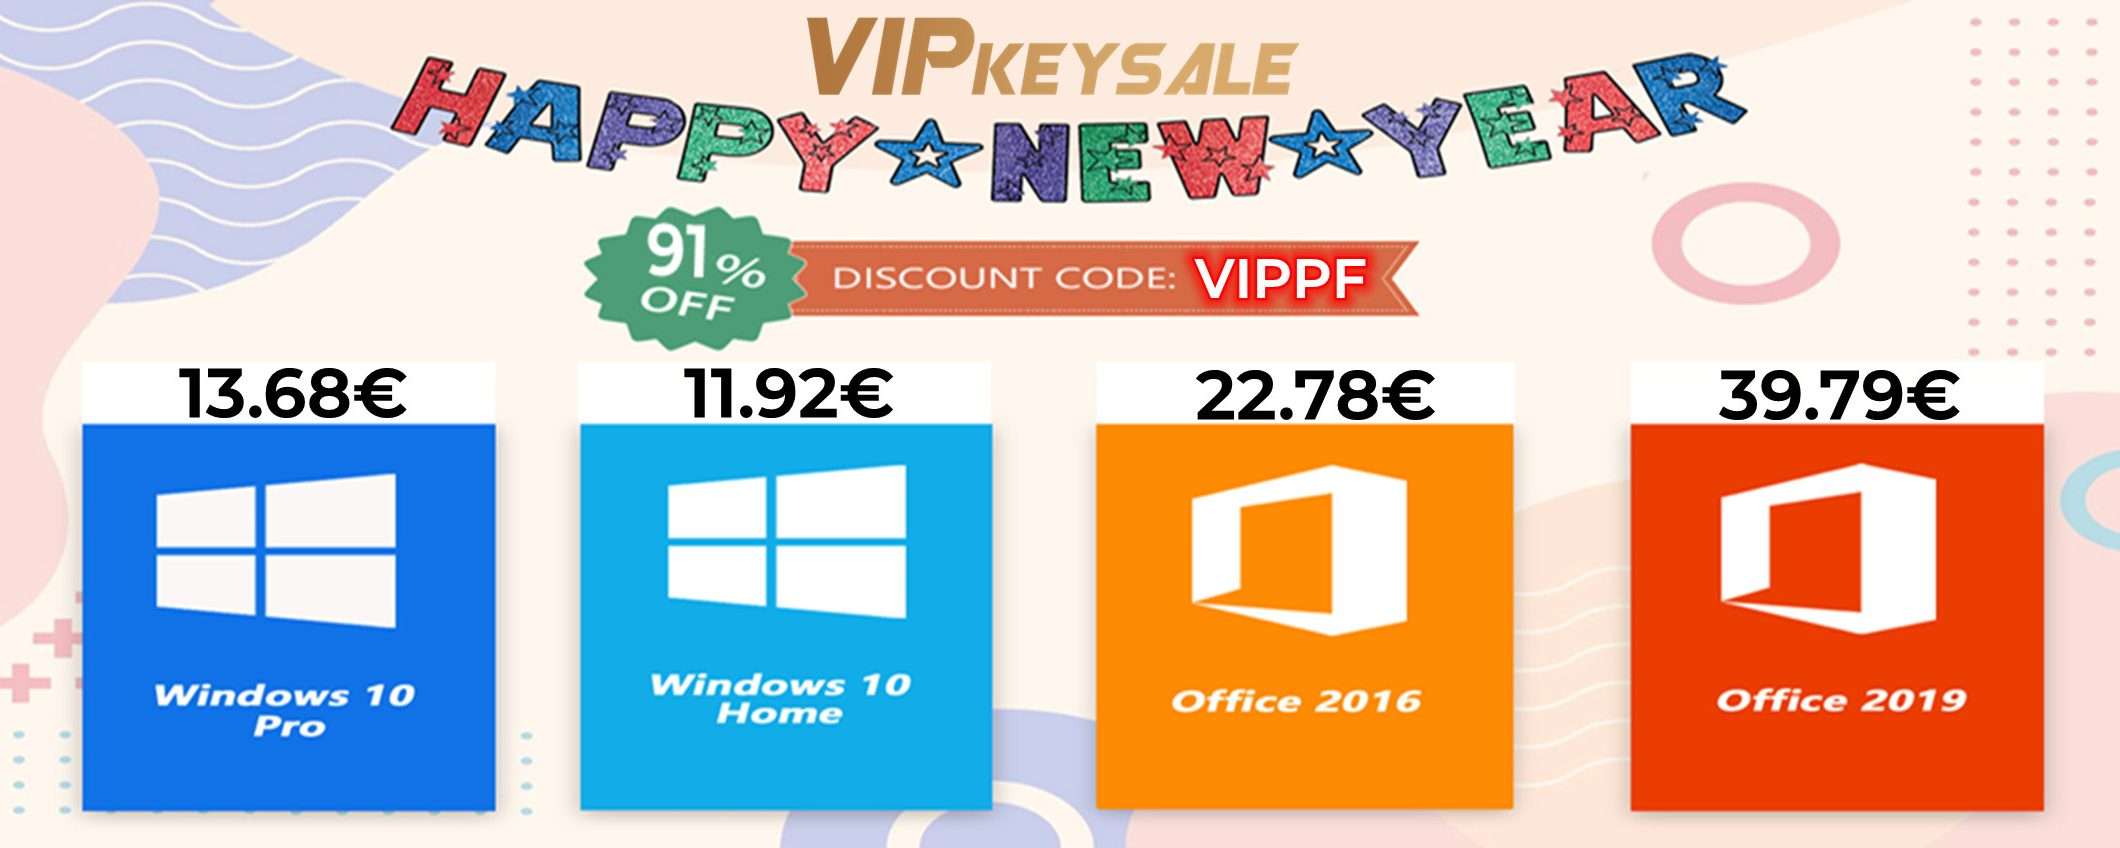 Sconti del 91%! Con VIPKeySale licenze Windows 10 a soli 12€, Office a 22€